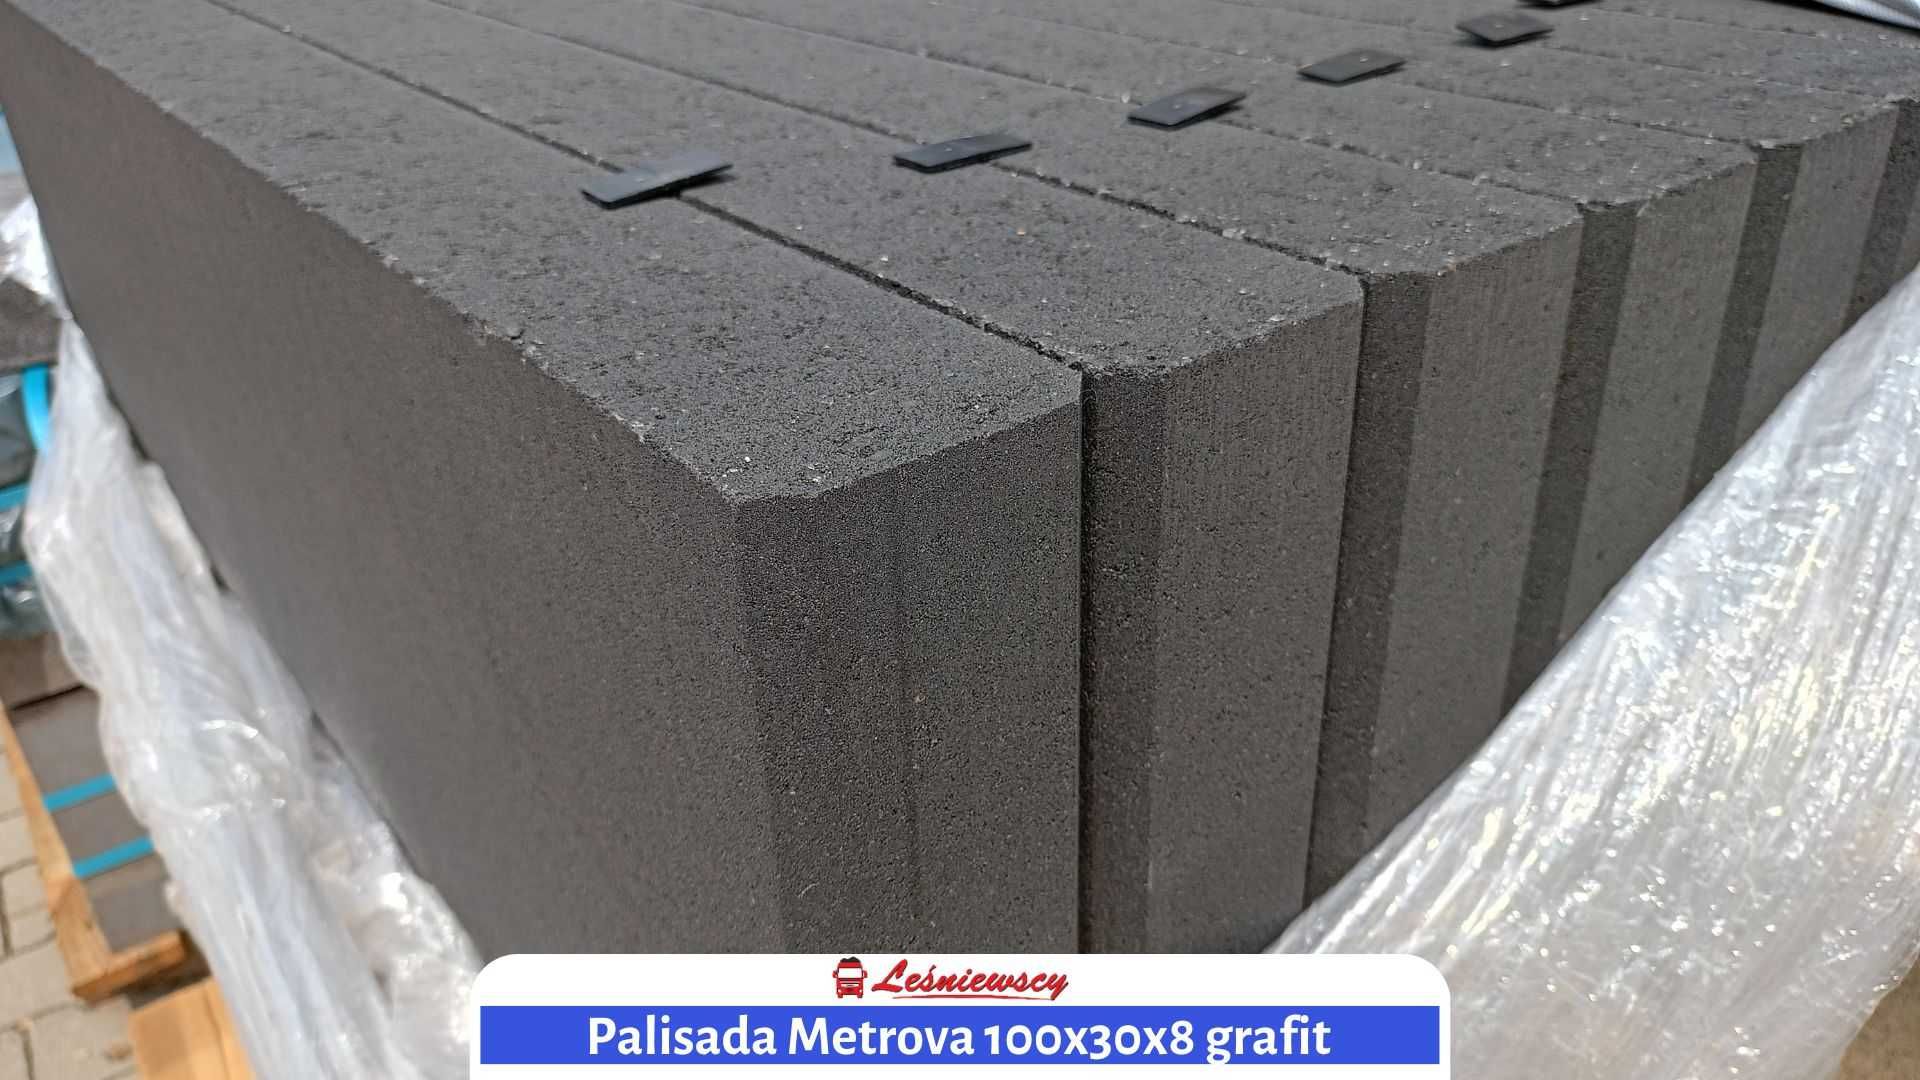 Palisada betonowa Metrova 100x30x8 - kostki brukowe - Kurier